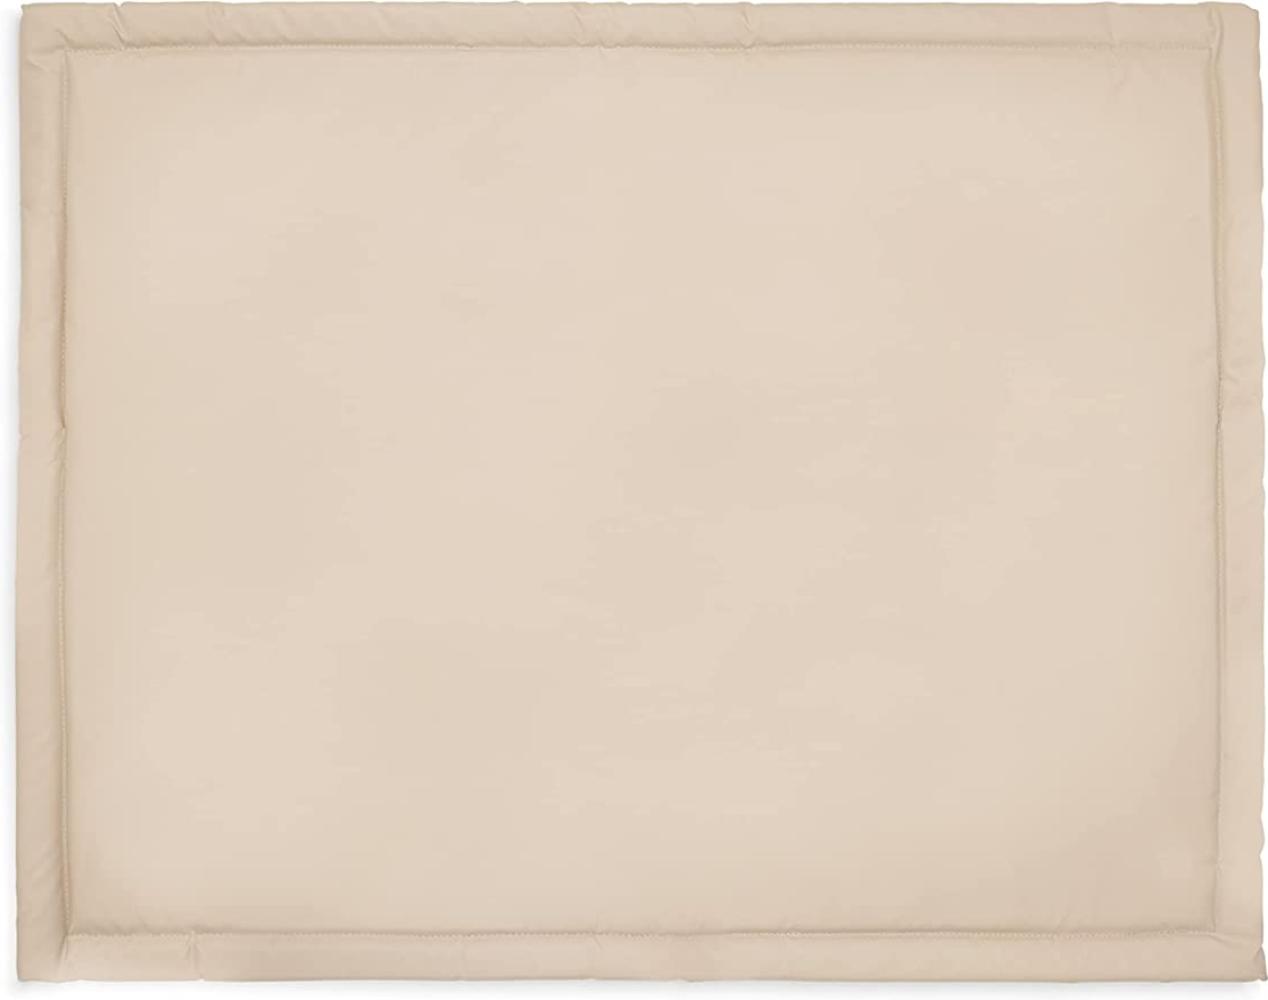 Jollein Laufstall-Deck Nougat 75 x 95 cm - Beige Bild 1